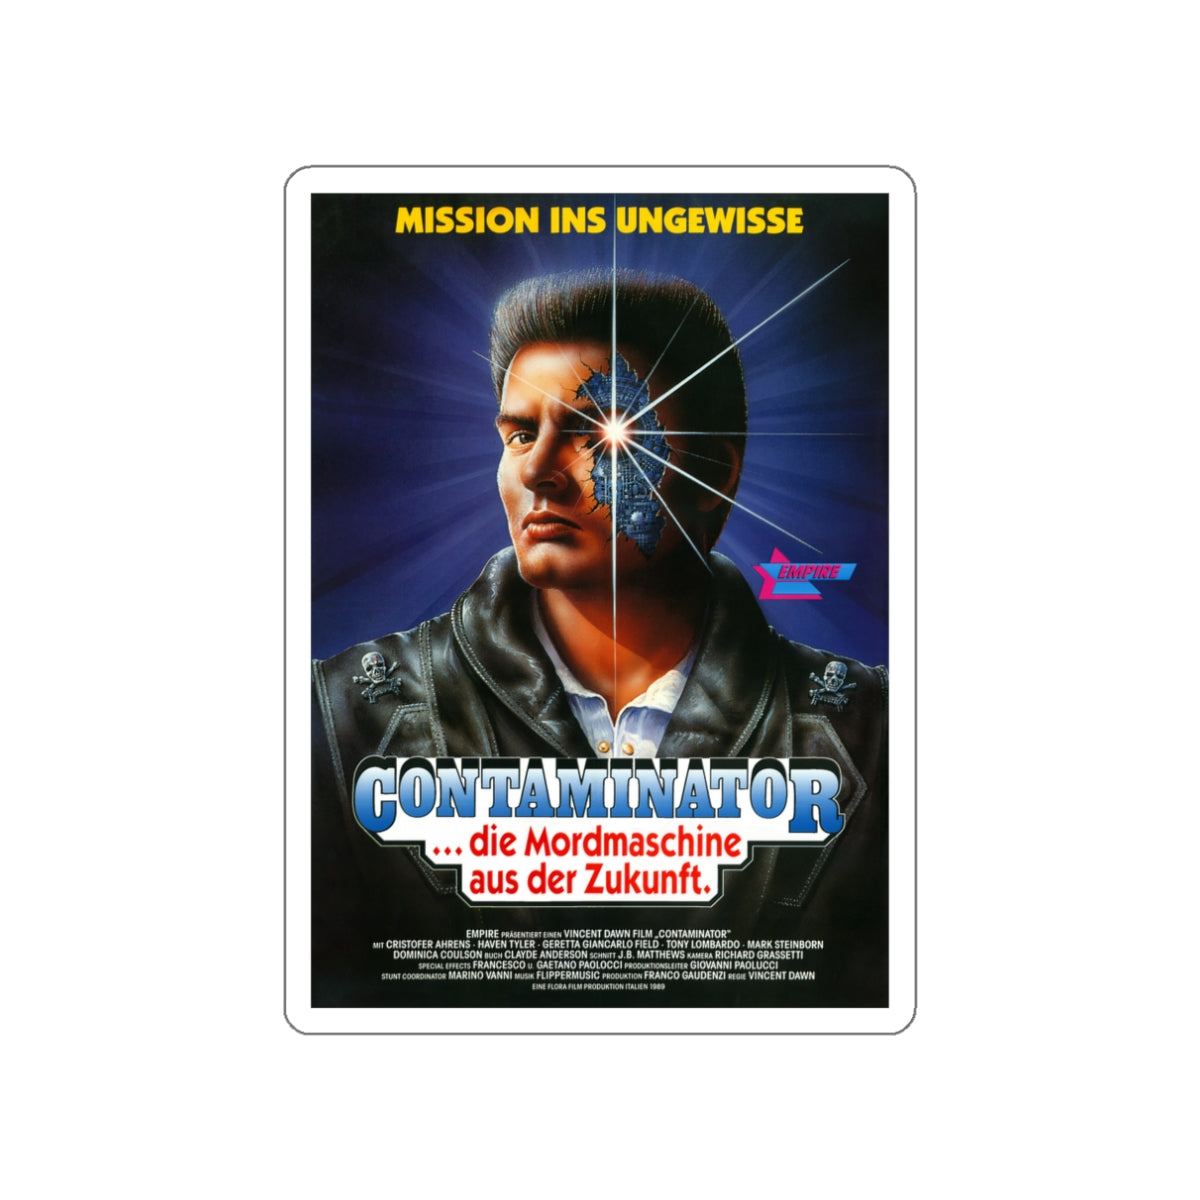 TERMINATOR 2 (SHOCKING DARK) GERMAN 1989 Movie Poster STICKER Vinyl Die-Cut Decal-White-The Sticker Space